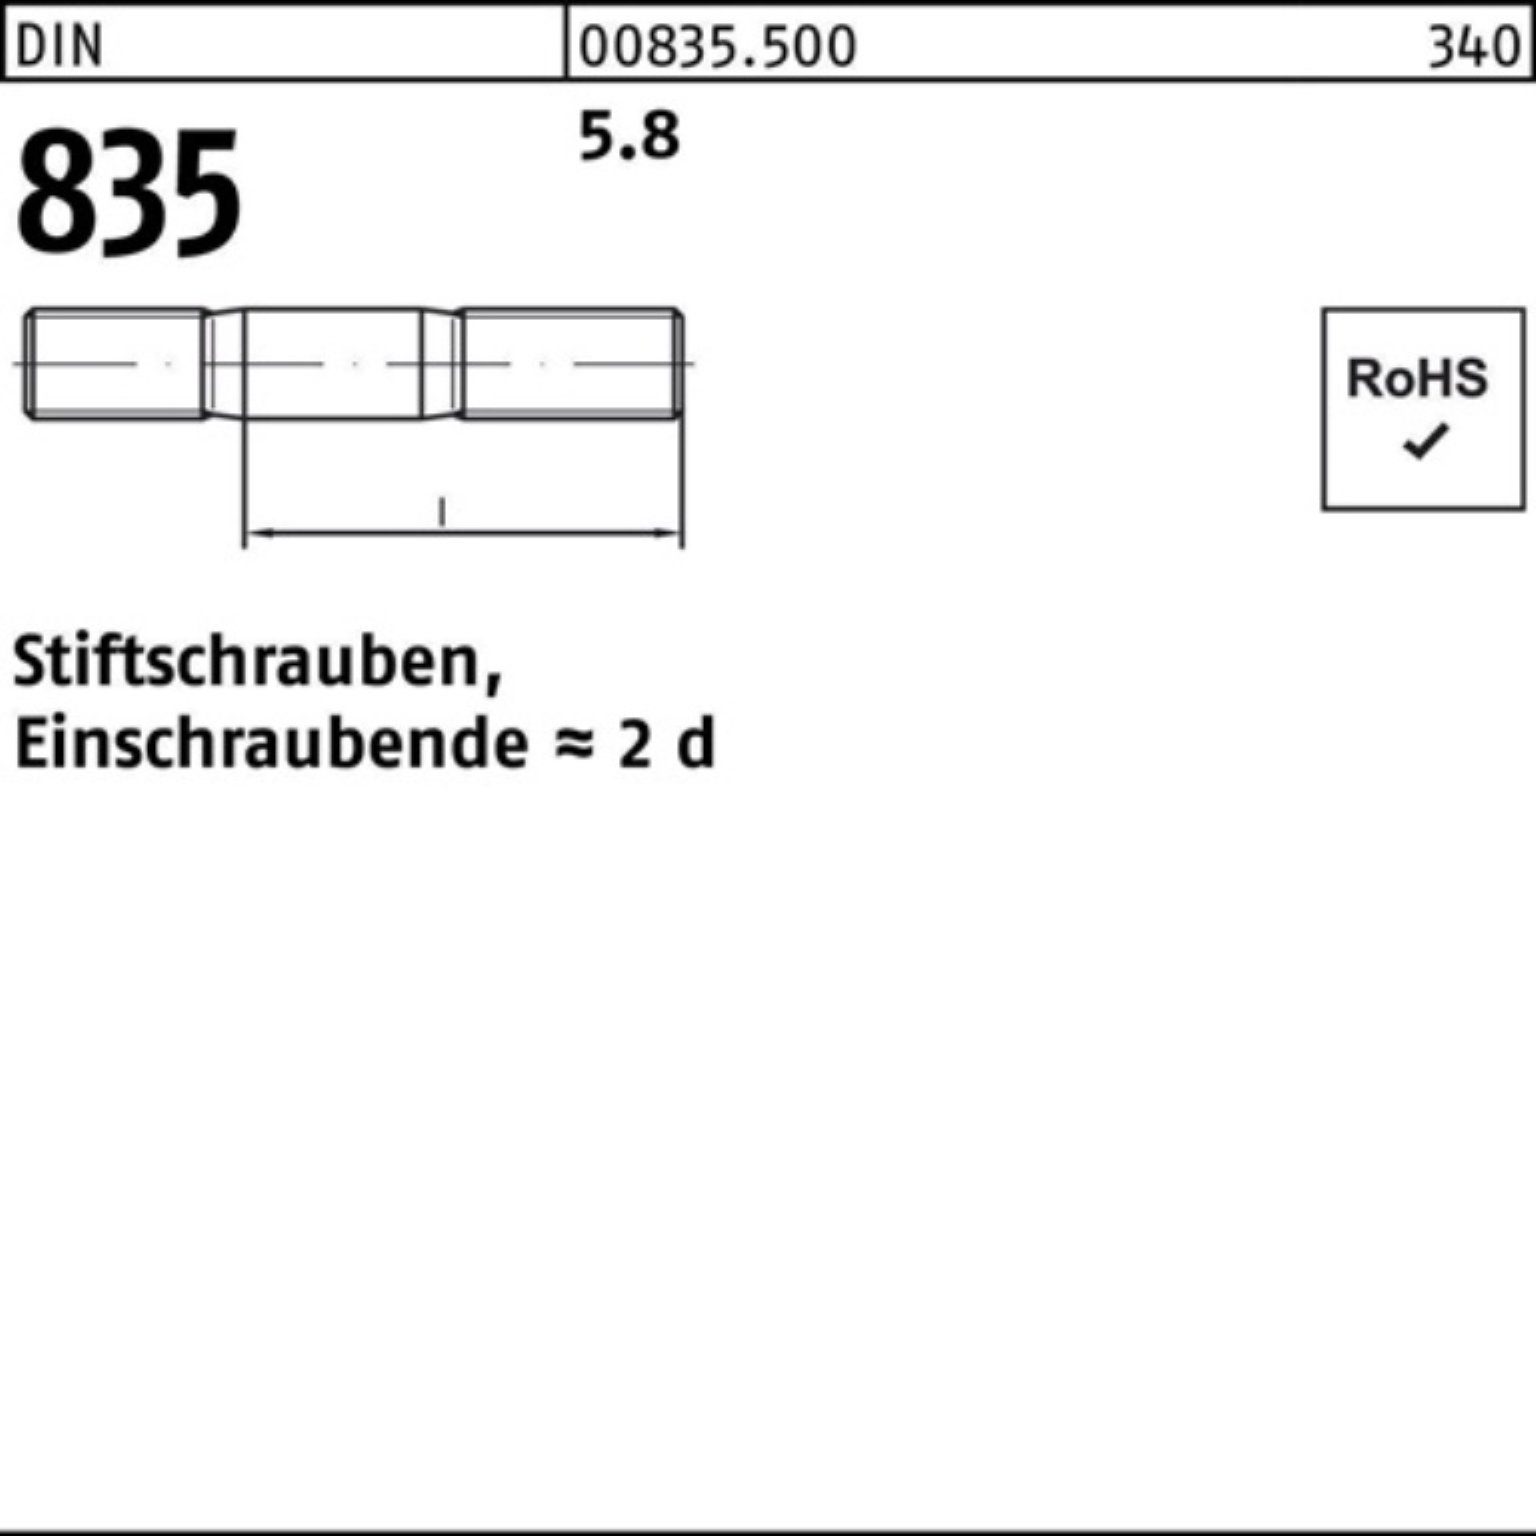 Reyher Stiftschraube 100er Pack Stiftschraube 100 DIN M8x Einschraubende=2d 835 45 5.8 Stü